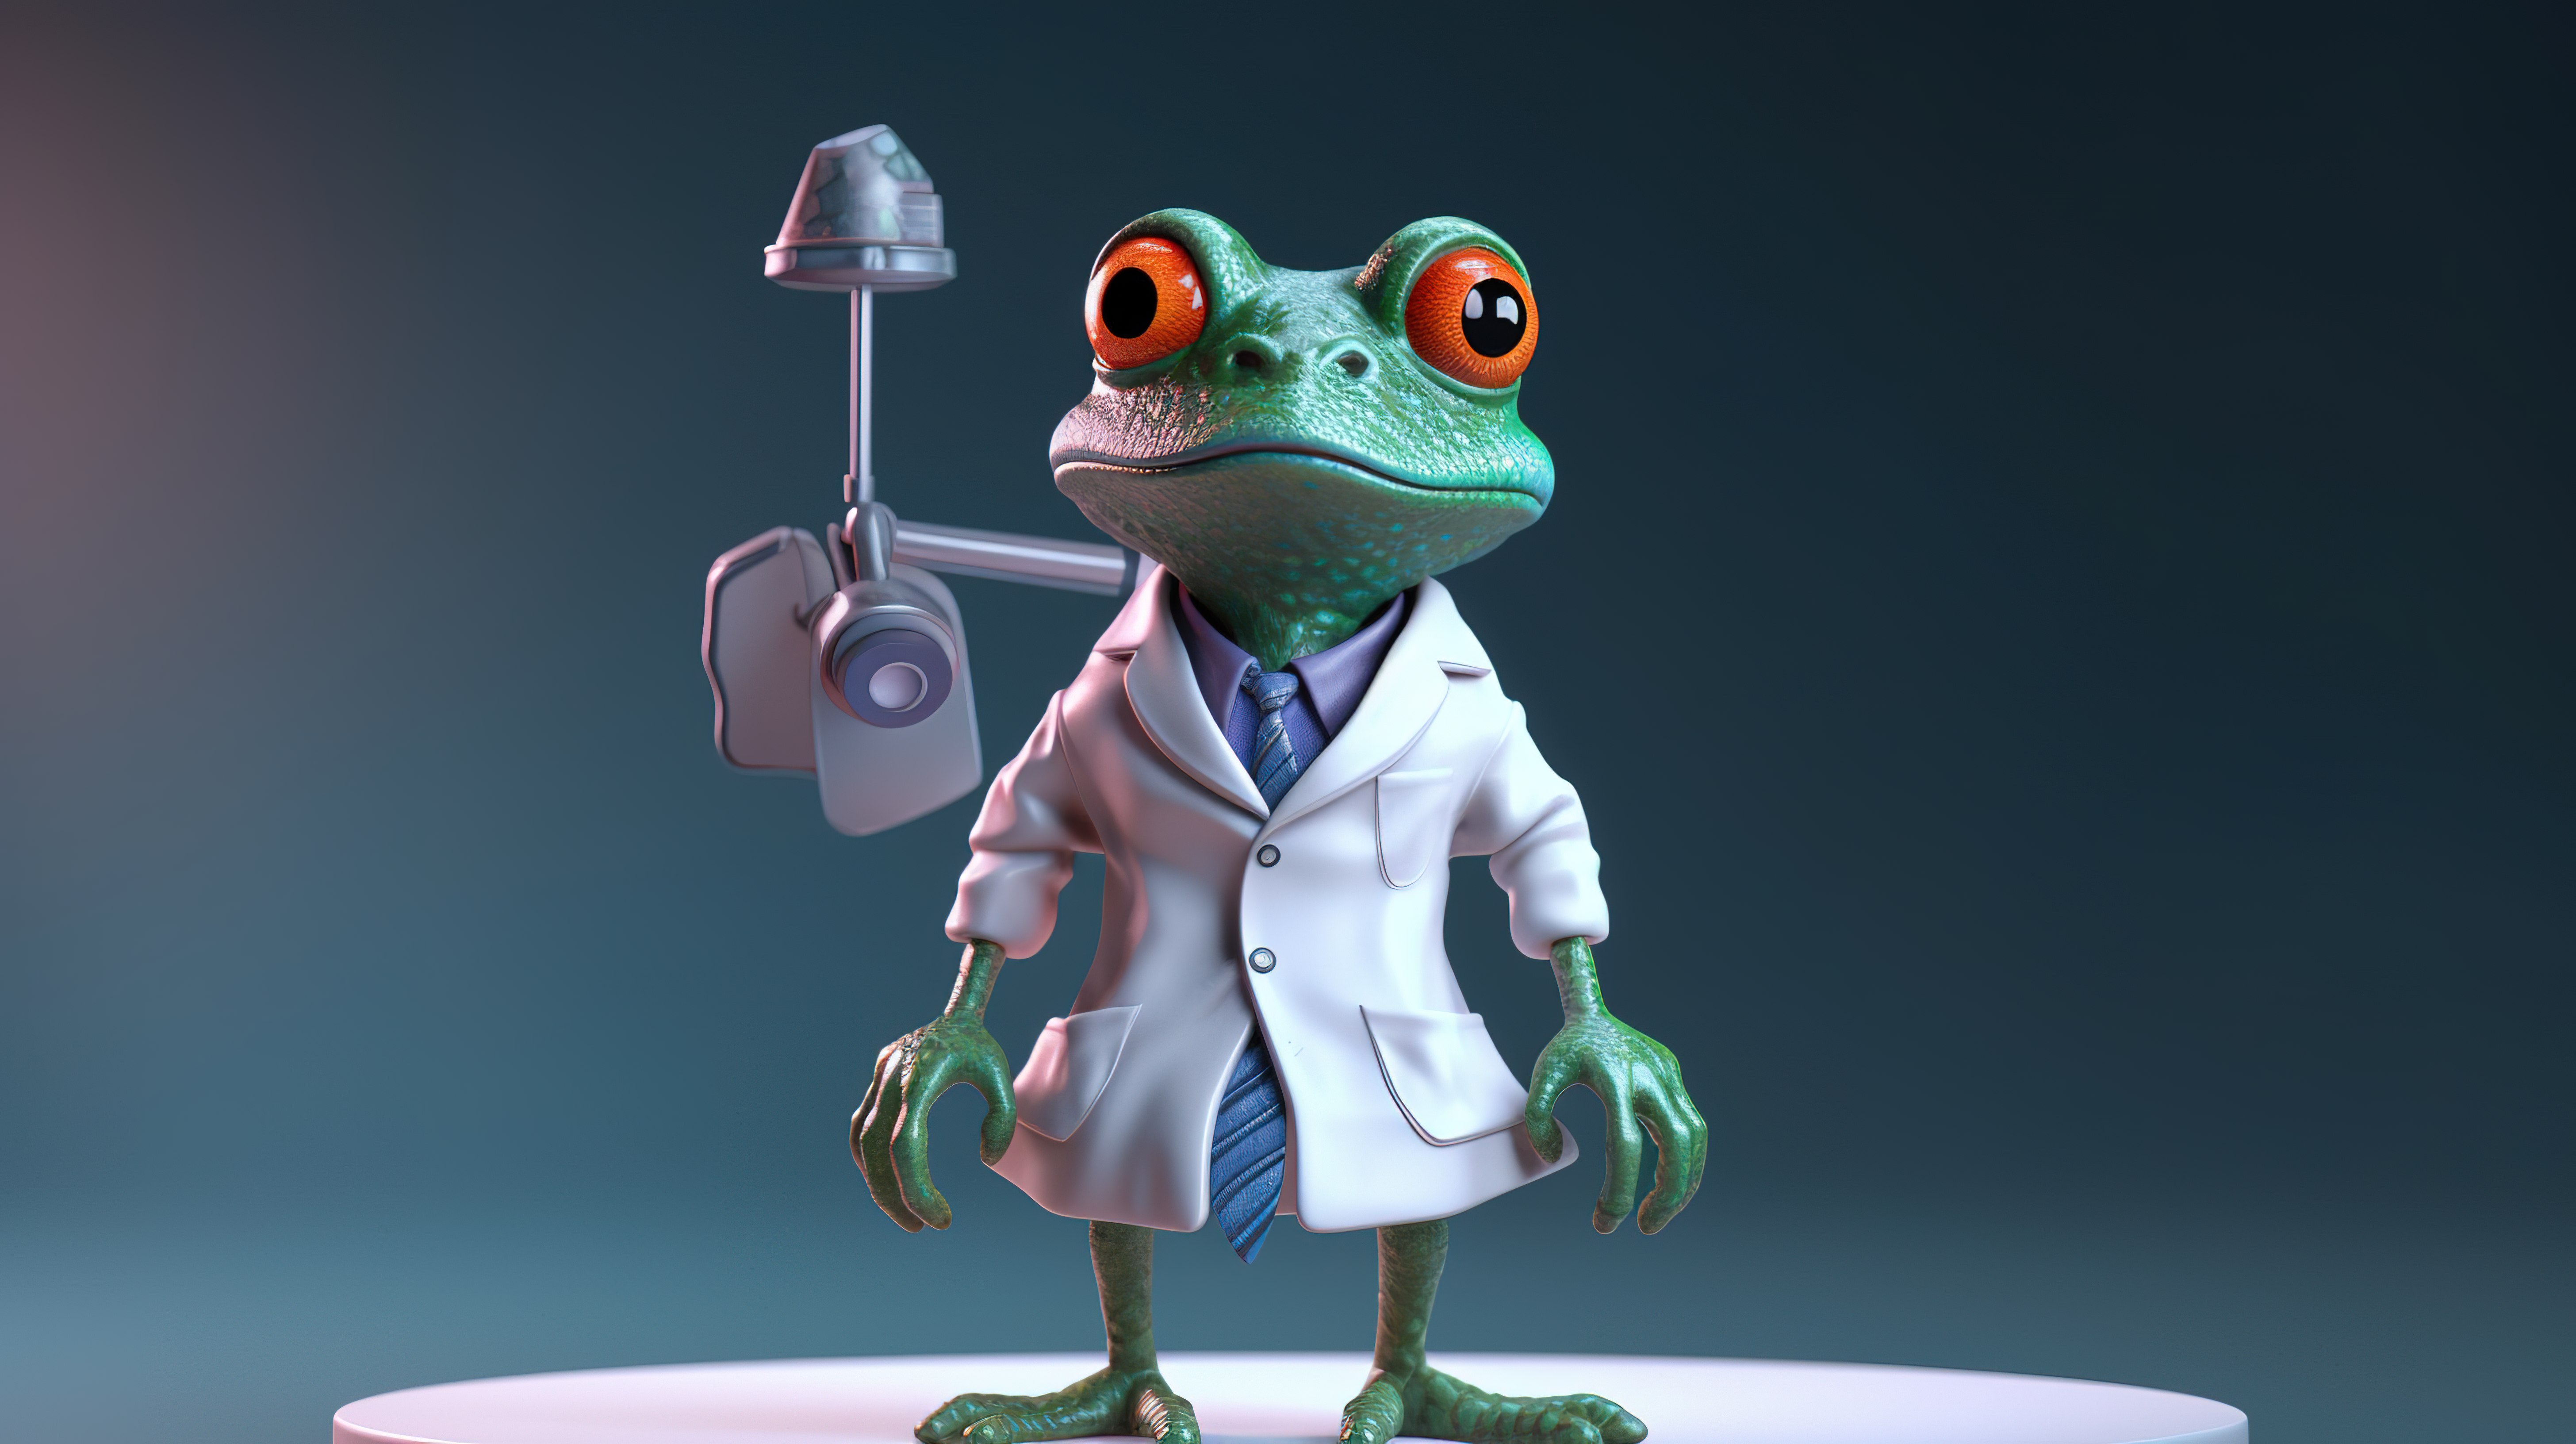 穿着医用服装的青蛙的 3d 插图图片